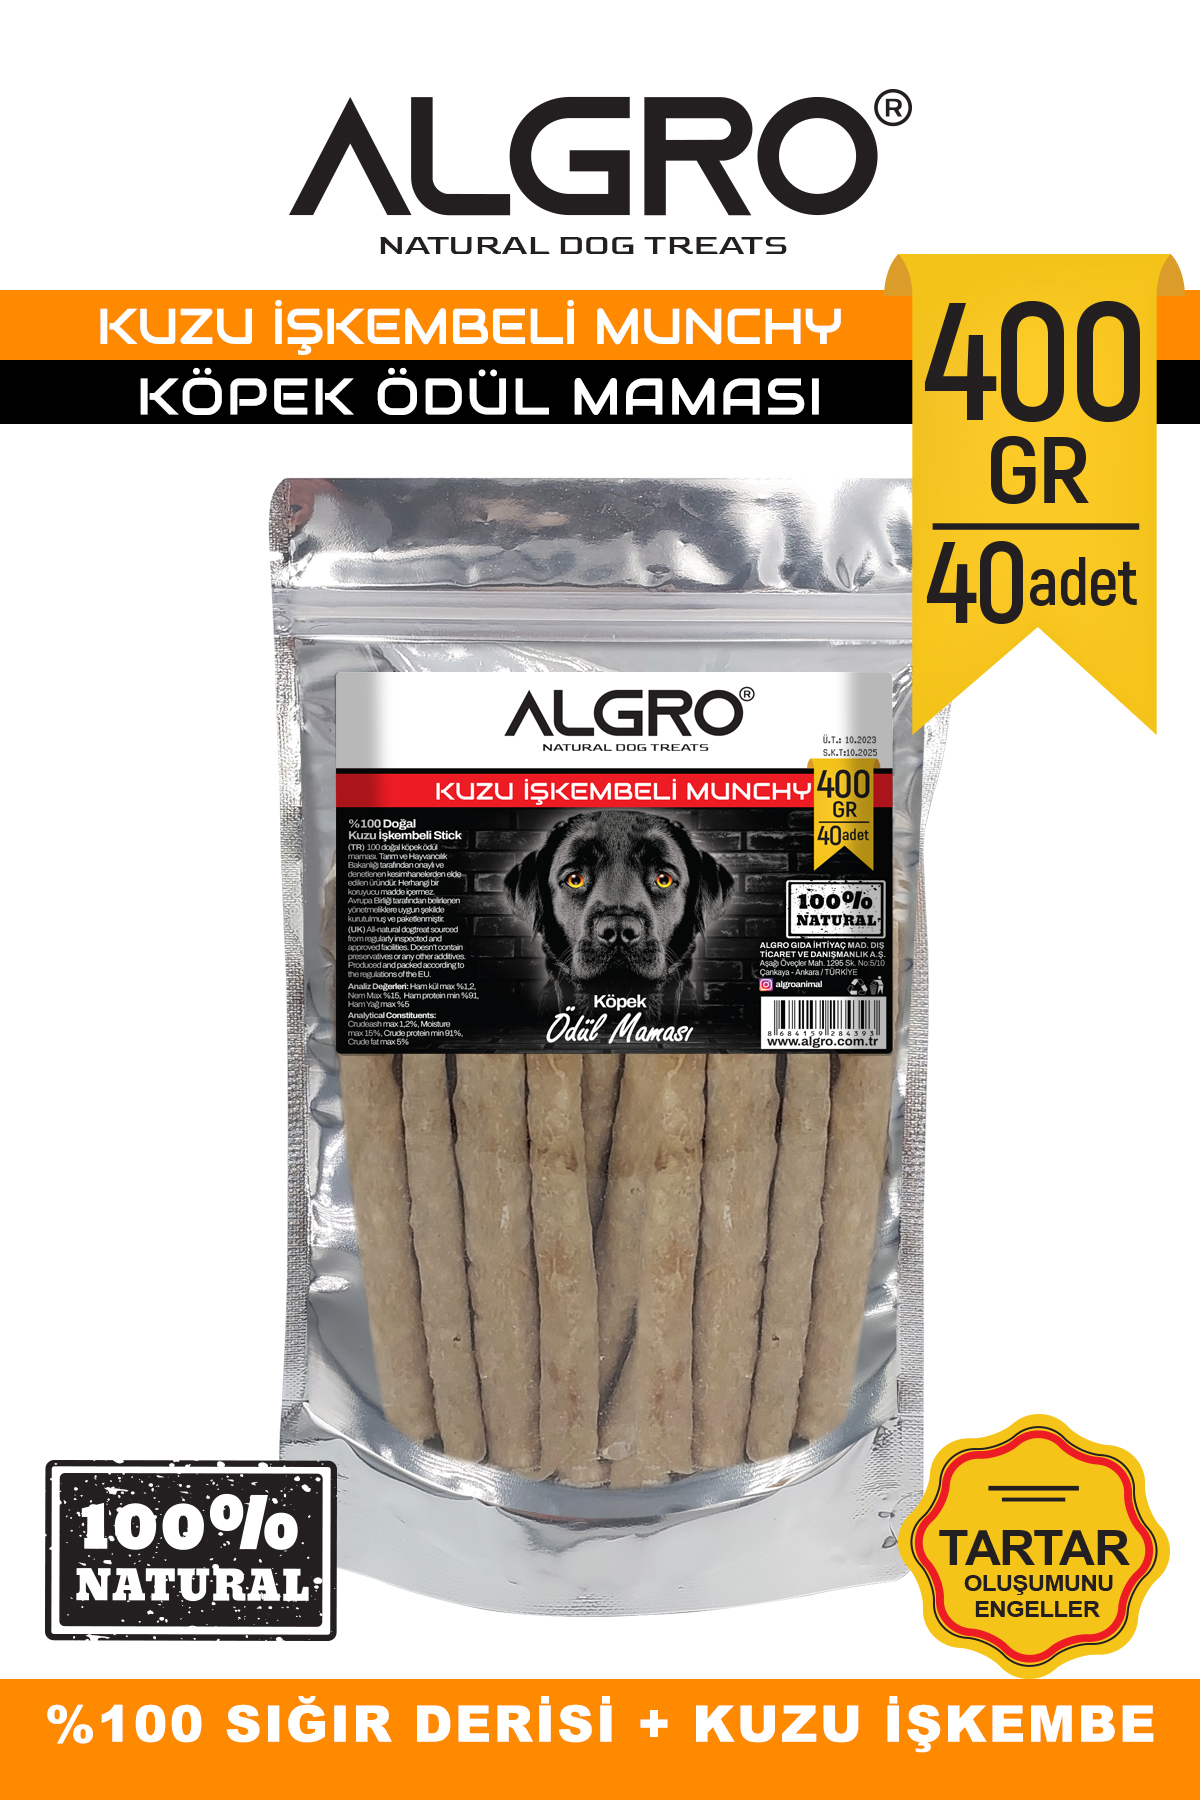 Algro Kuzu İşkembeli Munchy Stick Çiğnemelik Yenilebilir 400 G